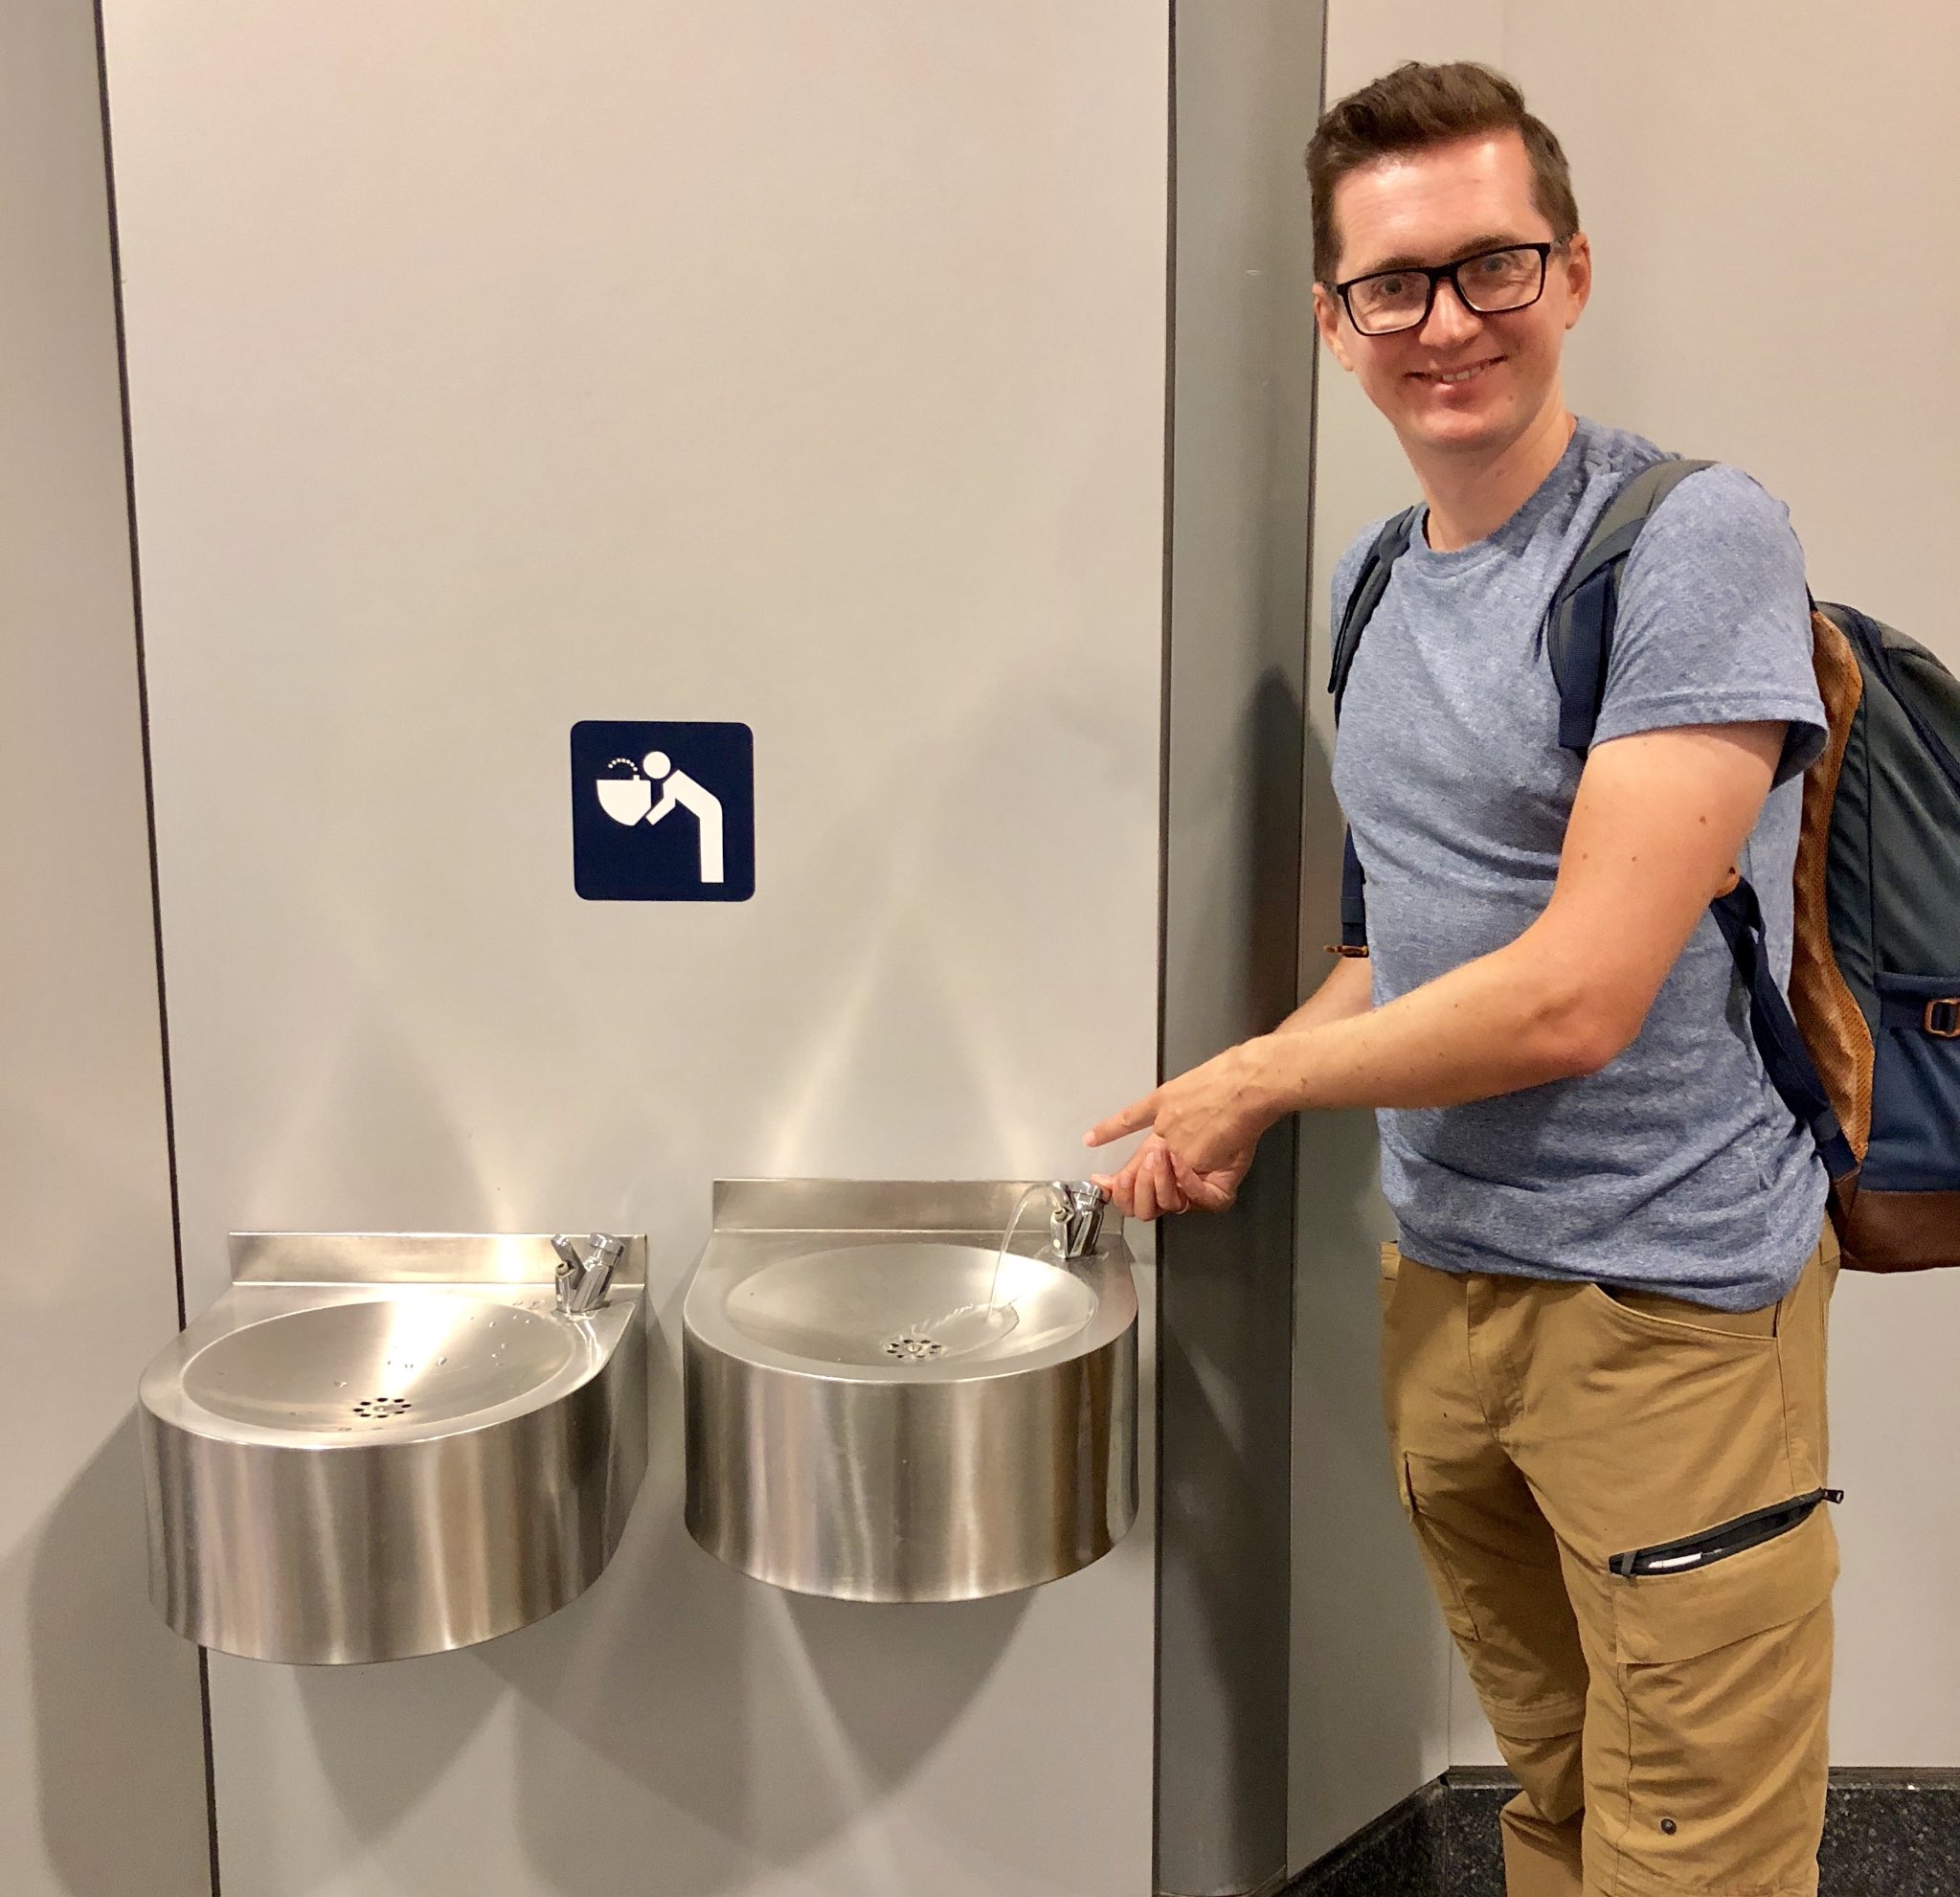 Бесплатная вода в аэропорту. Питьевые фонтанчики в аэропорту Домодедово. Питьевой фонтанчик. Вода в аэропорту питьевая. Фонтанчики для питья воды в аэропорту.